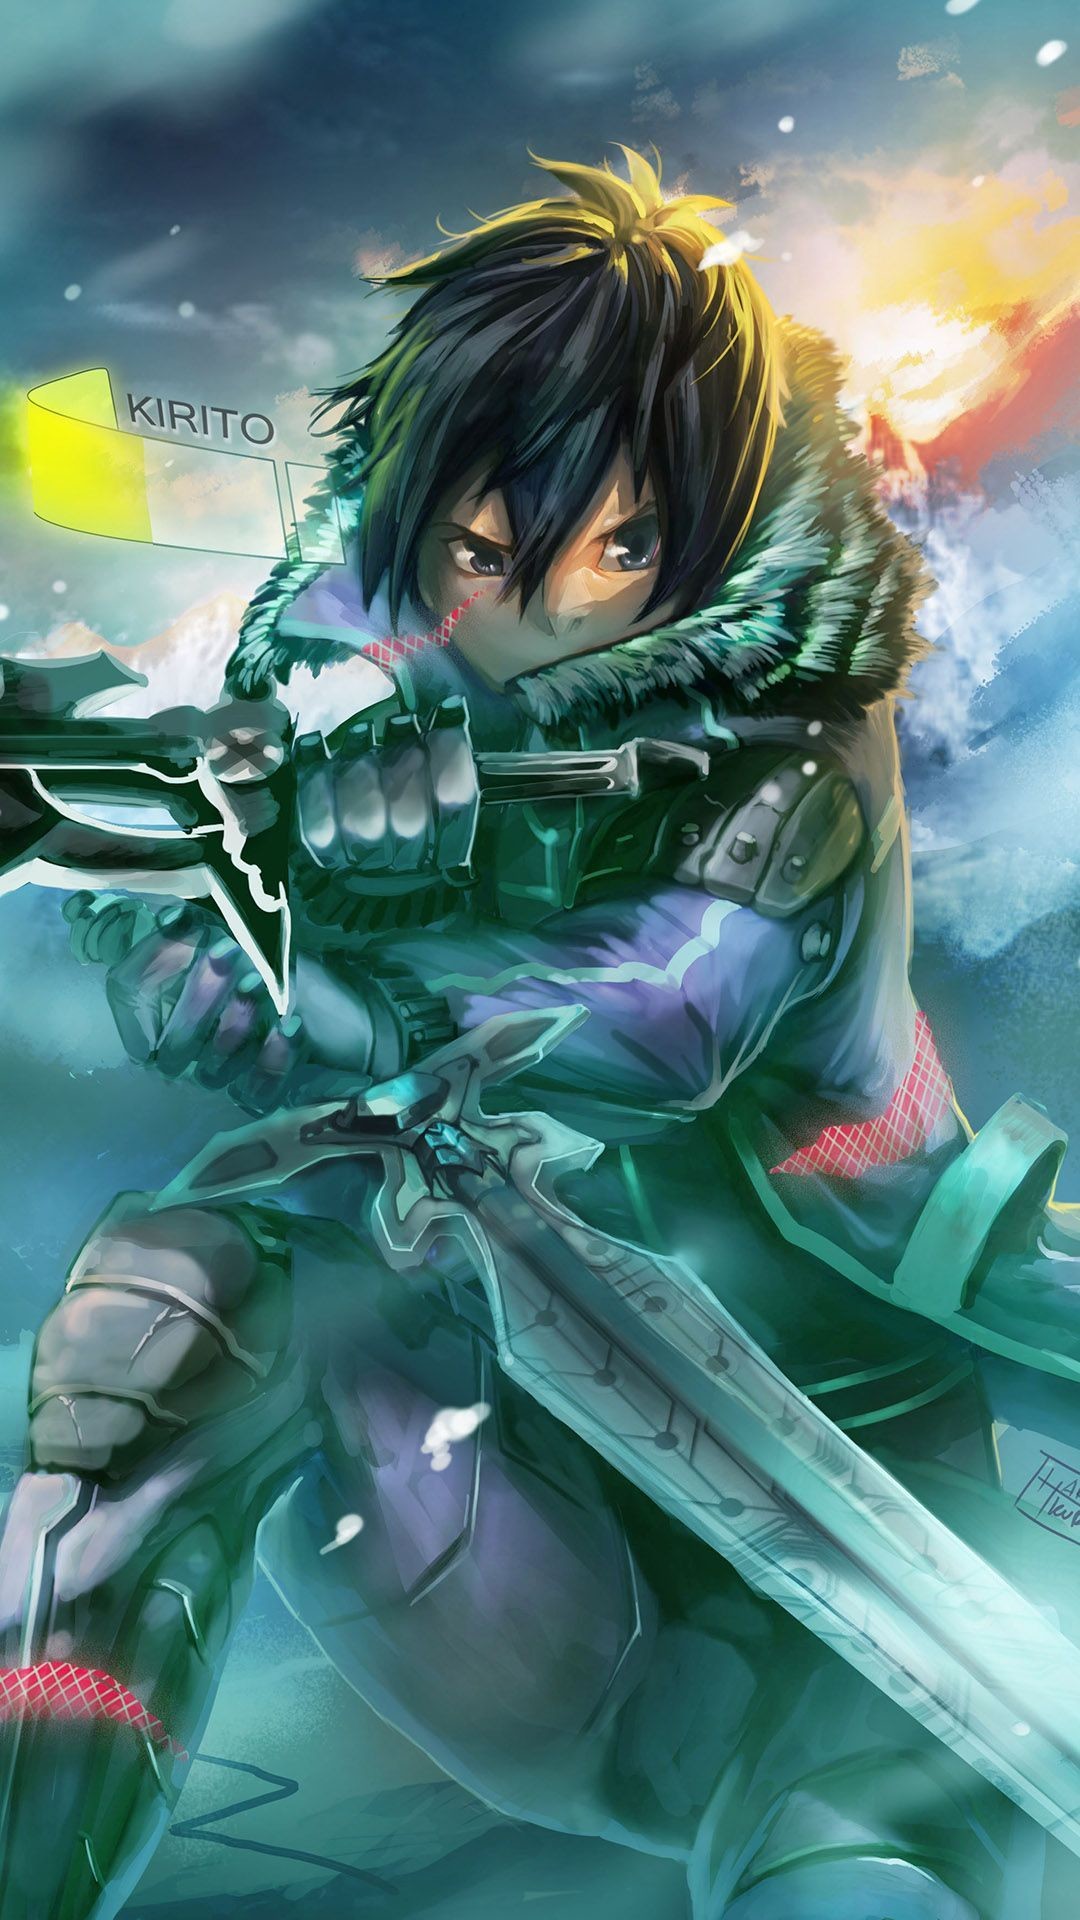 Kirito – Sword Art Online Anime mobile wallpaper